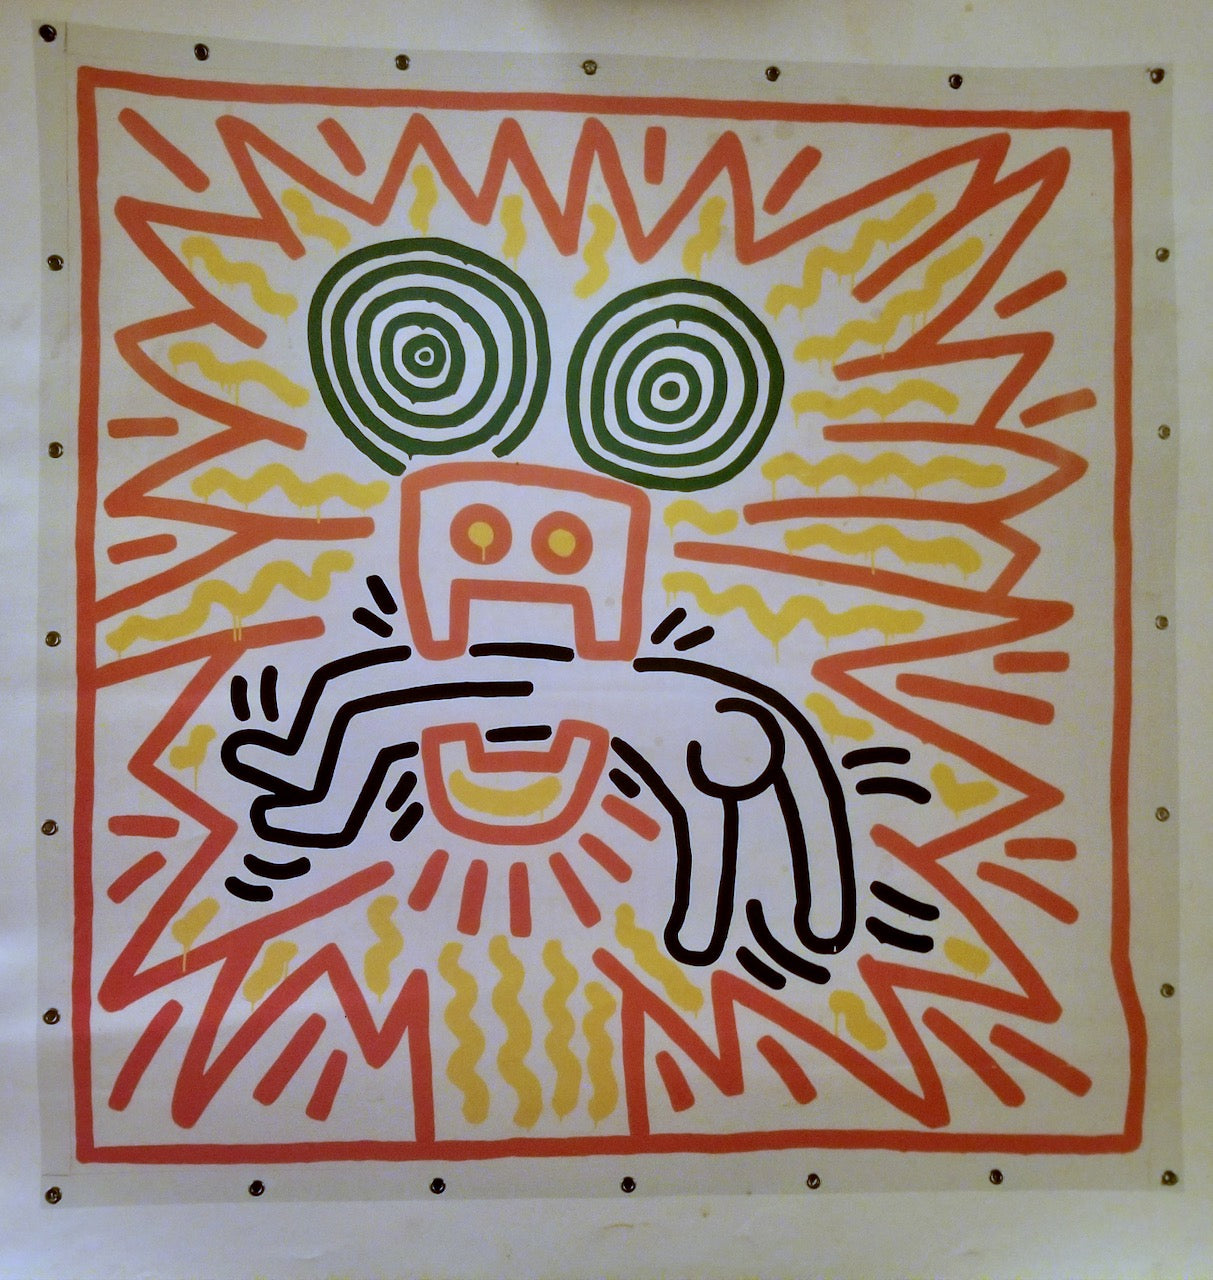 Keith Haring - "Untitled, November 1983" Vintage Unframed Poster